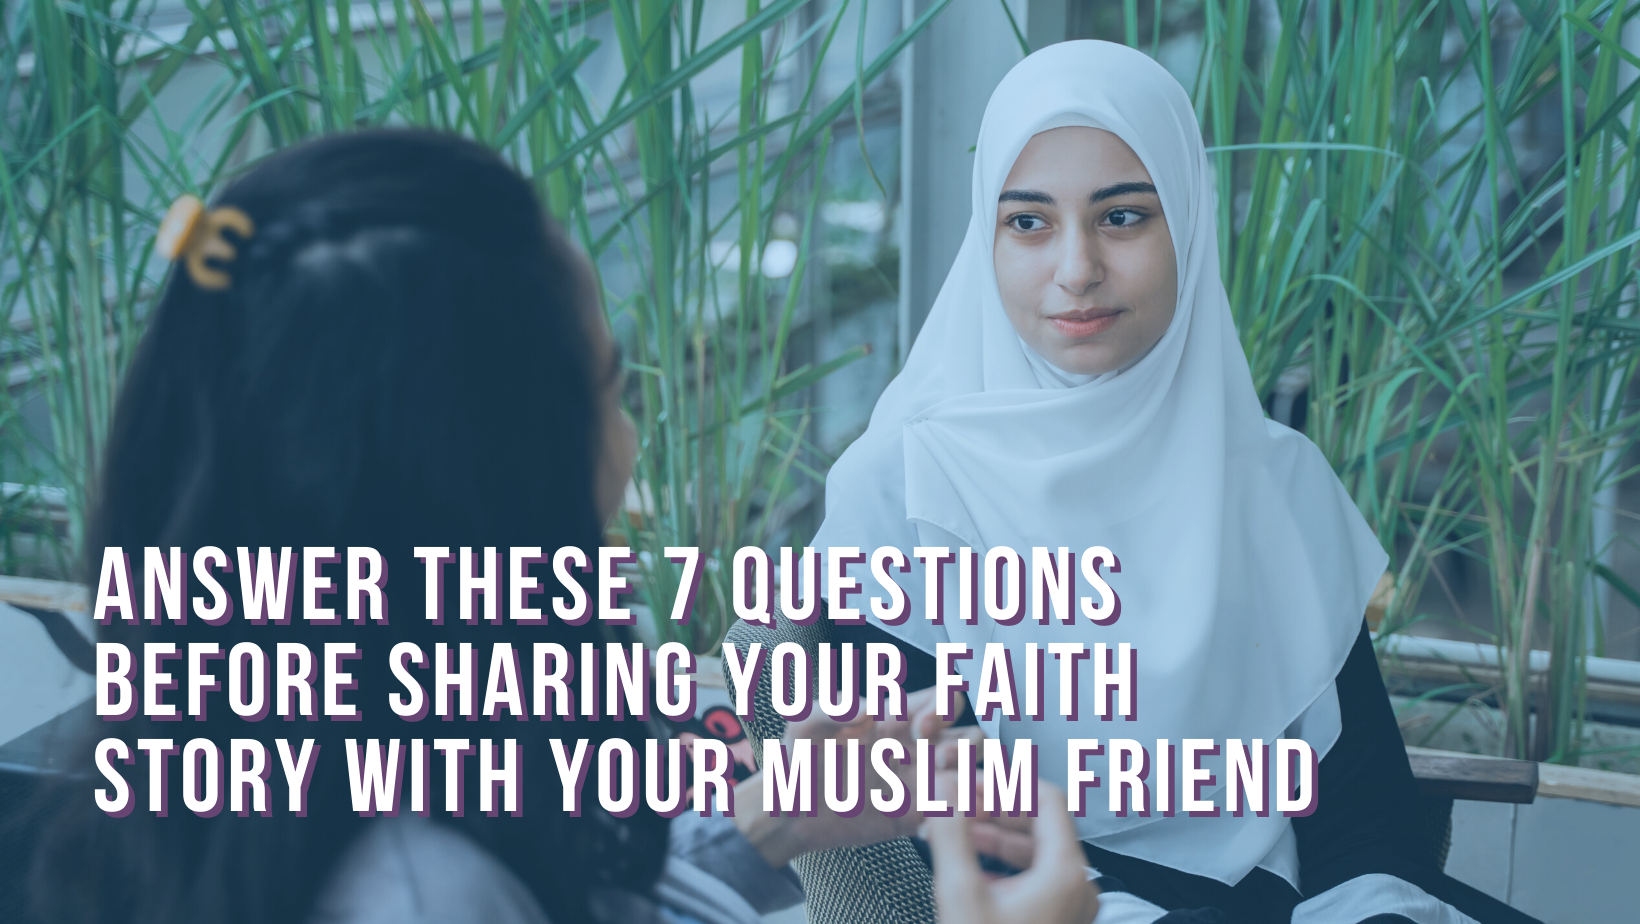 Muslim woman and friend talking